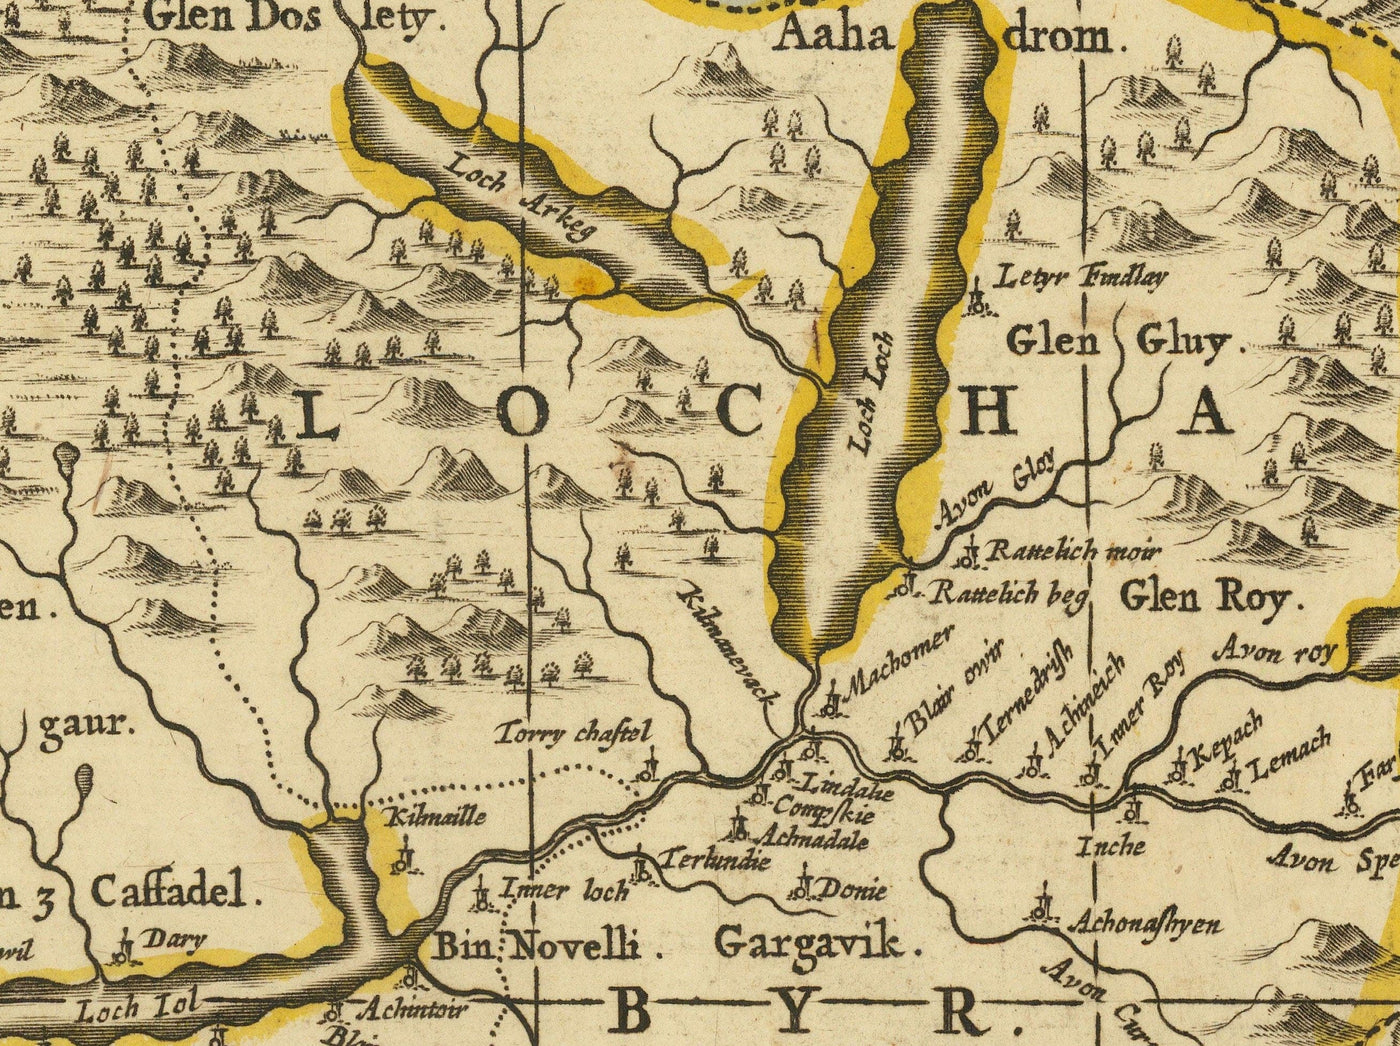 Antiguo mapa de las Hébridas interiores y exteriores, Mull y Skye, 1690 - Lochaber, Uist, Harris, Barra, Islas, Lagos